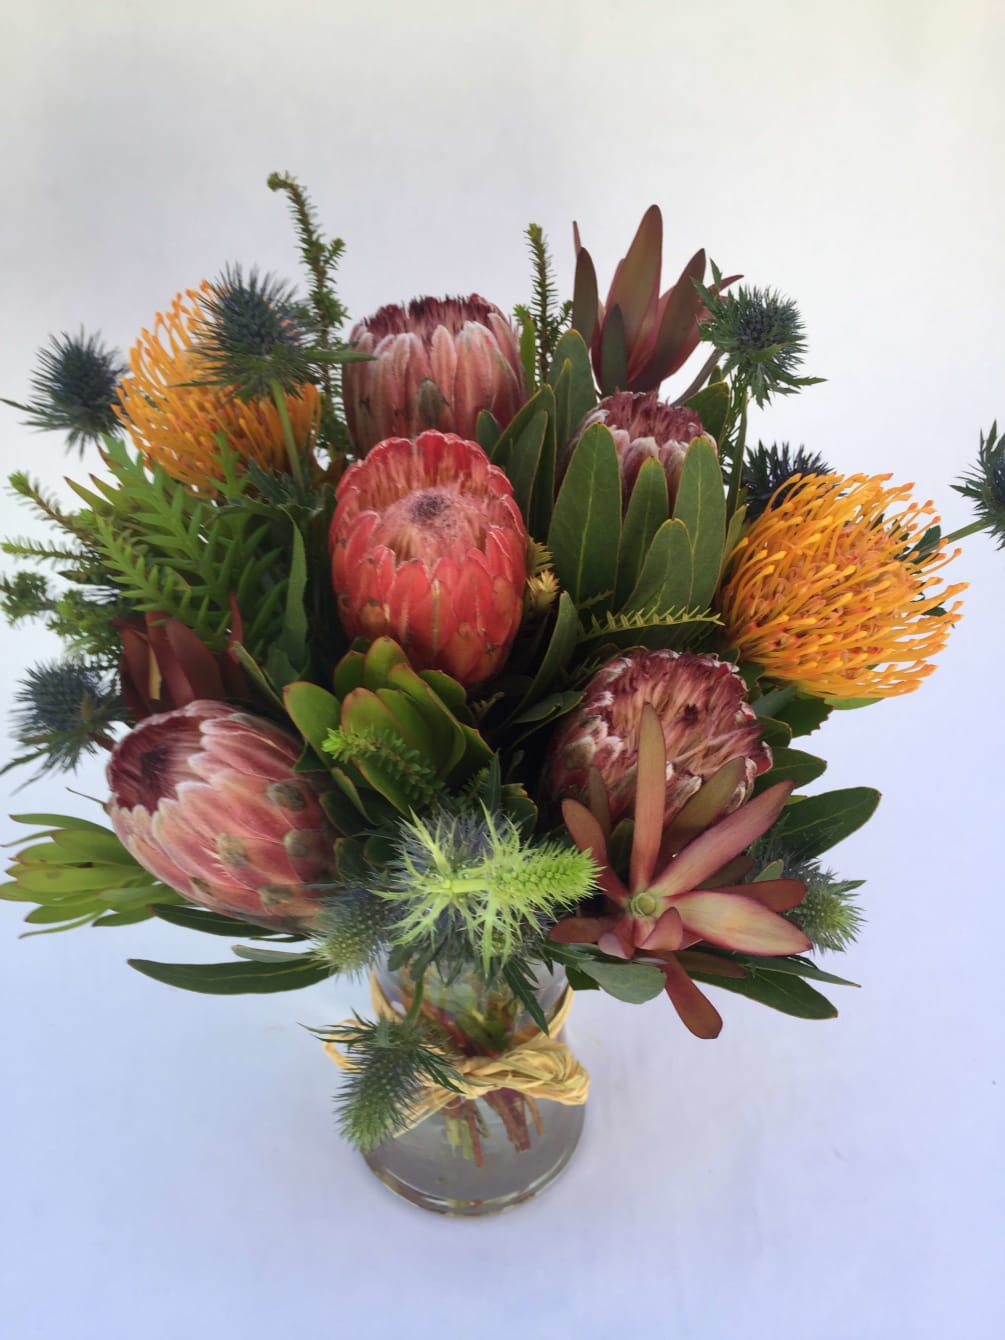 Prestige LV Bag Vase Level up your flower arrangements with our